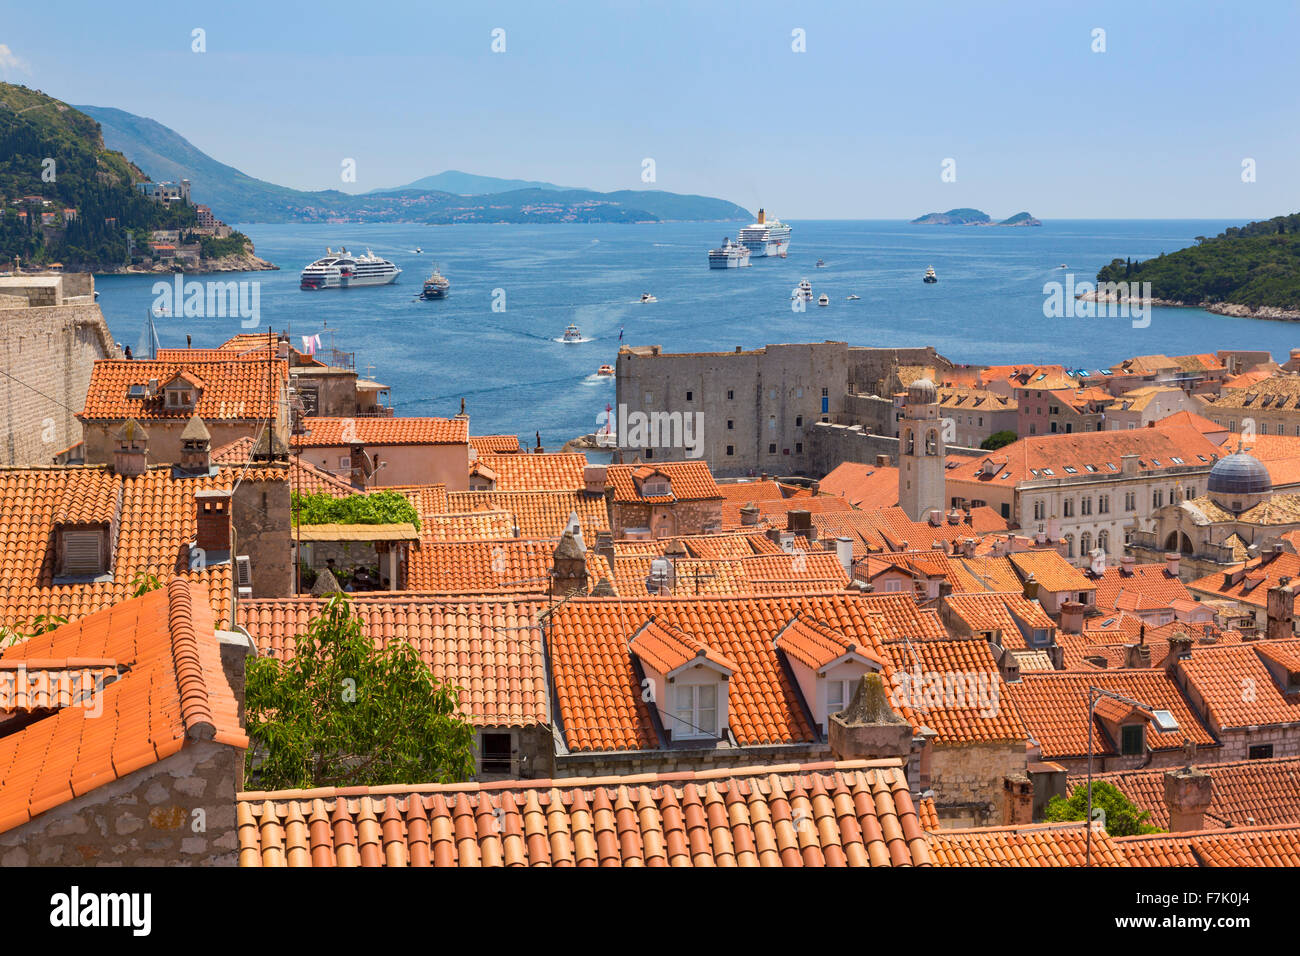 Dubrovnik, Dubrovnik-Neretva County, Croazia. Vista sui tetti della città vecchia dalla torre Minceta. Le barche nel porto vecchio. Foto Stock